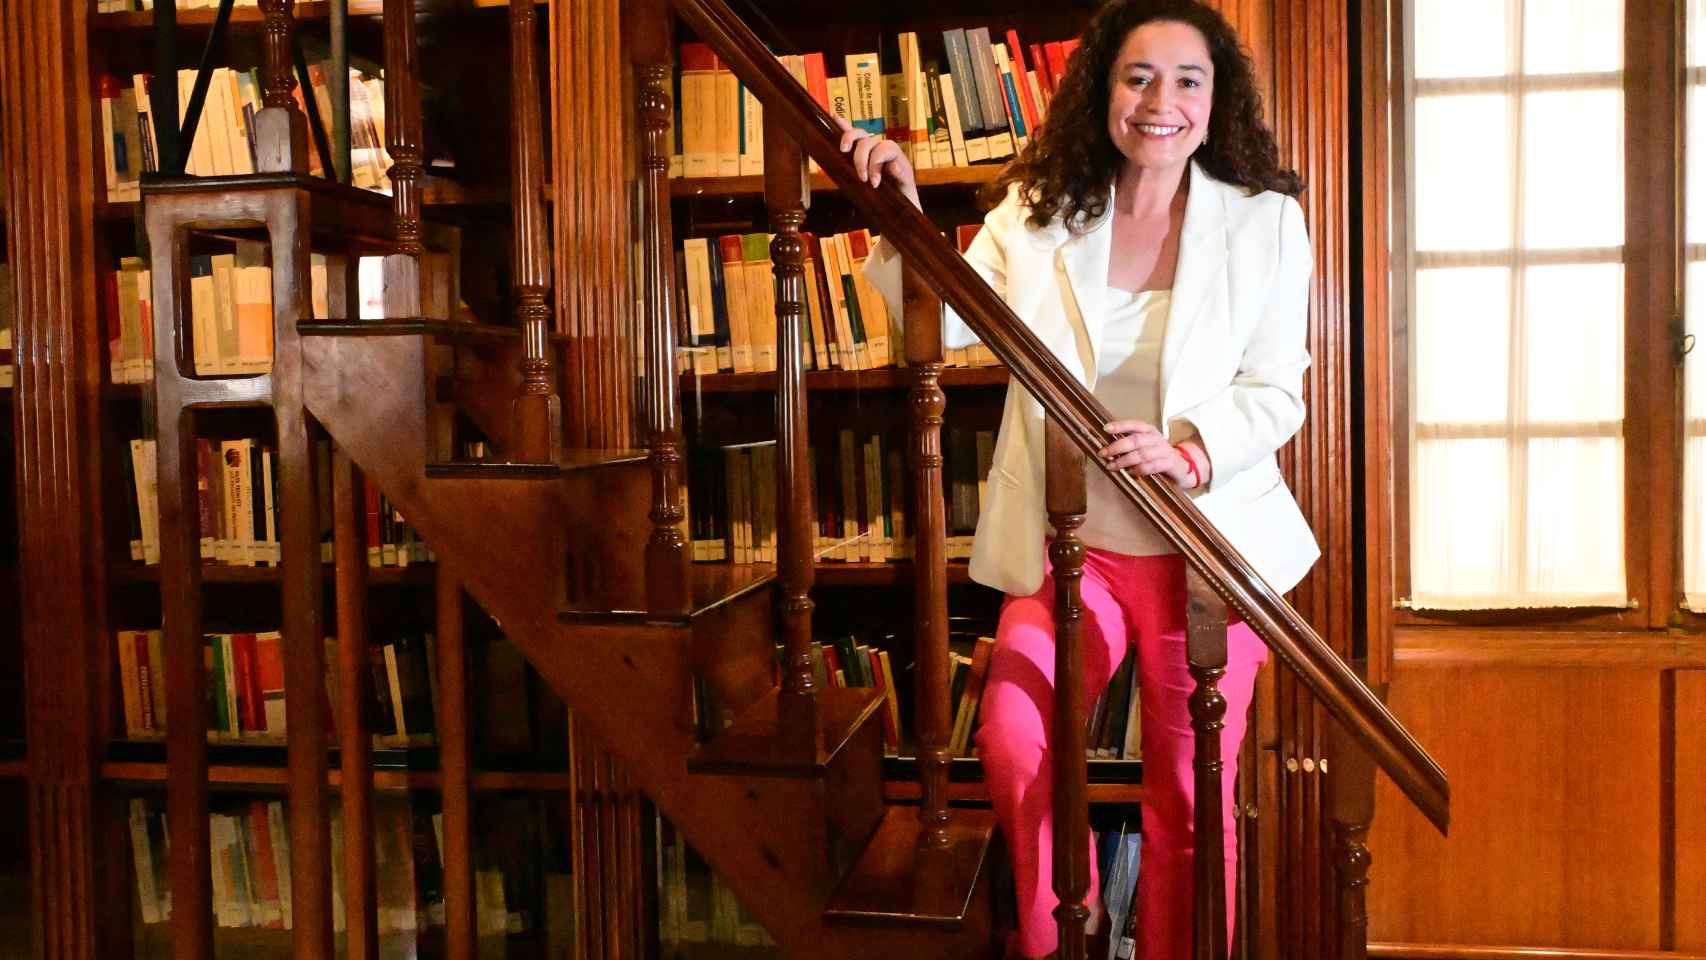 La candidata de la coalición de izquierdas, en la escalera que da acceso a los libros más altos de la biblioteca.